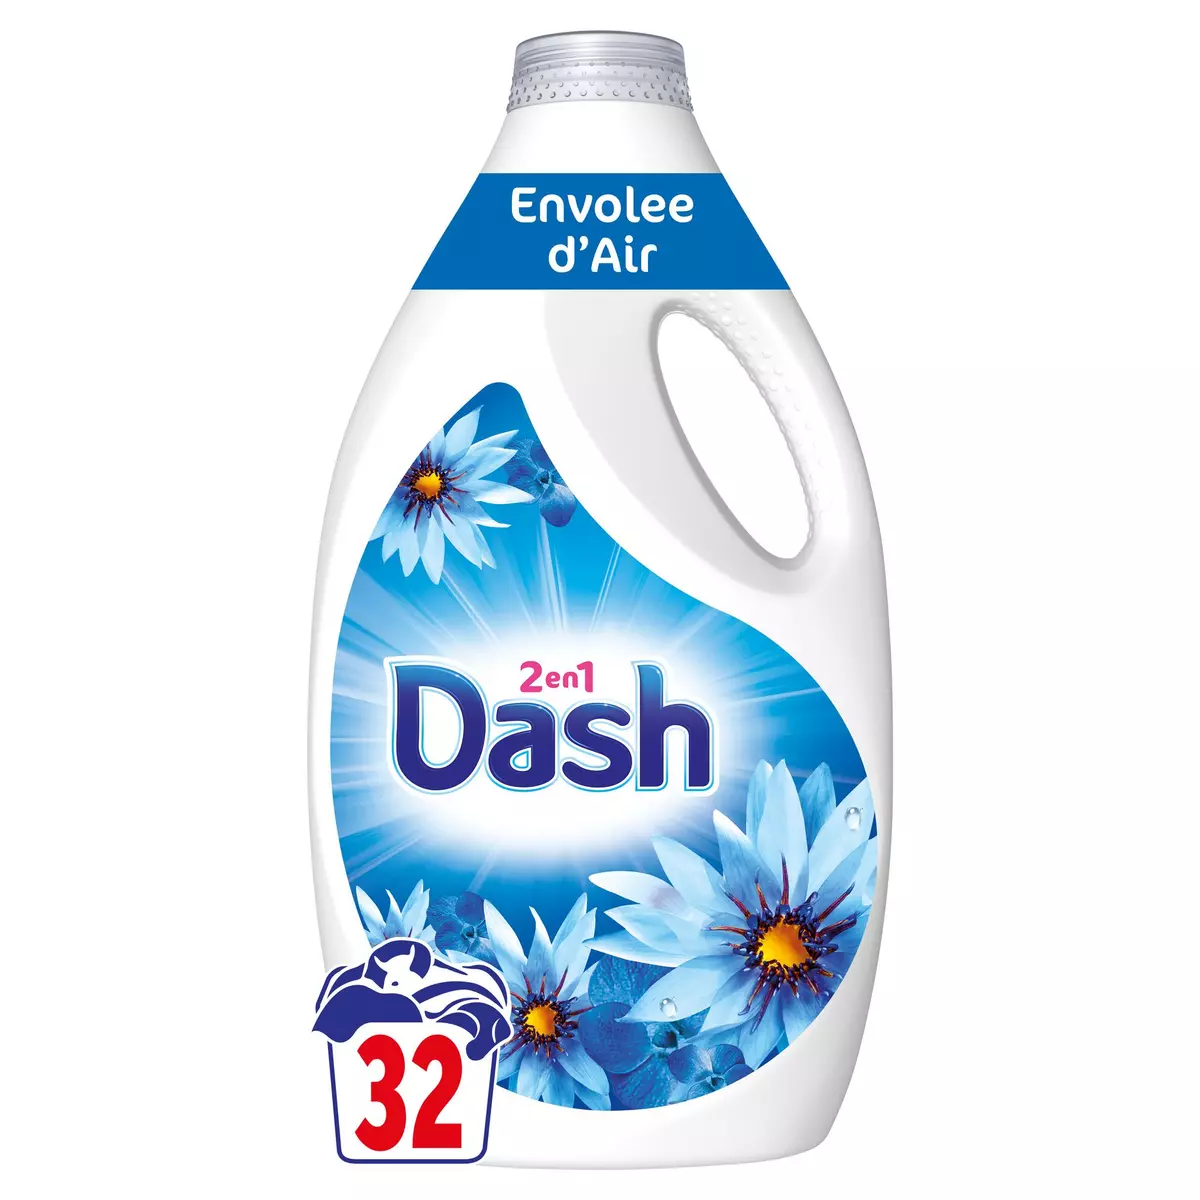 DASH Lessive liquide 2 en 1 envolée d'air 32 lavages 1,44l